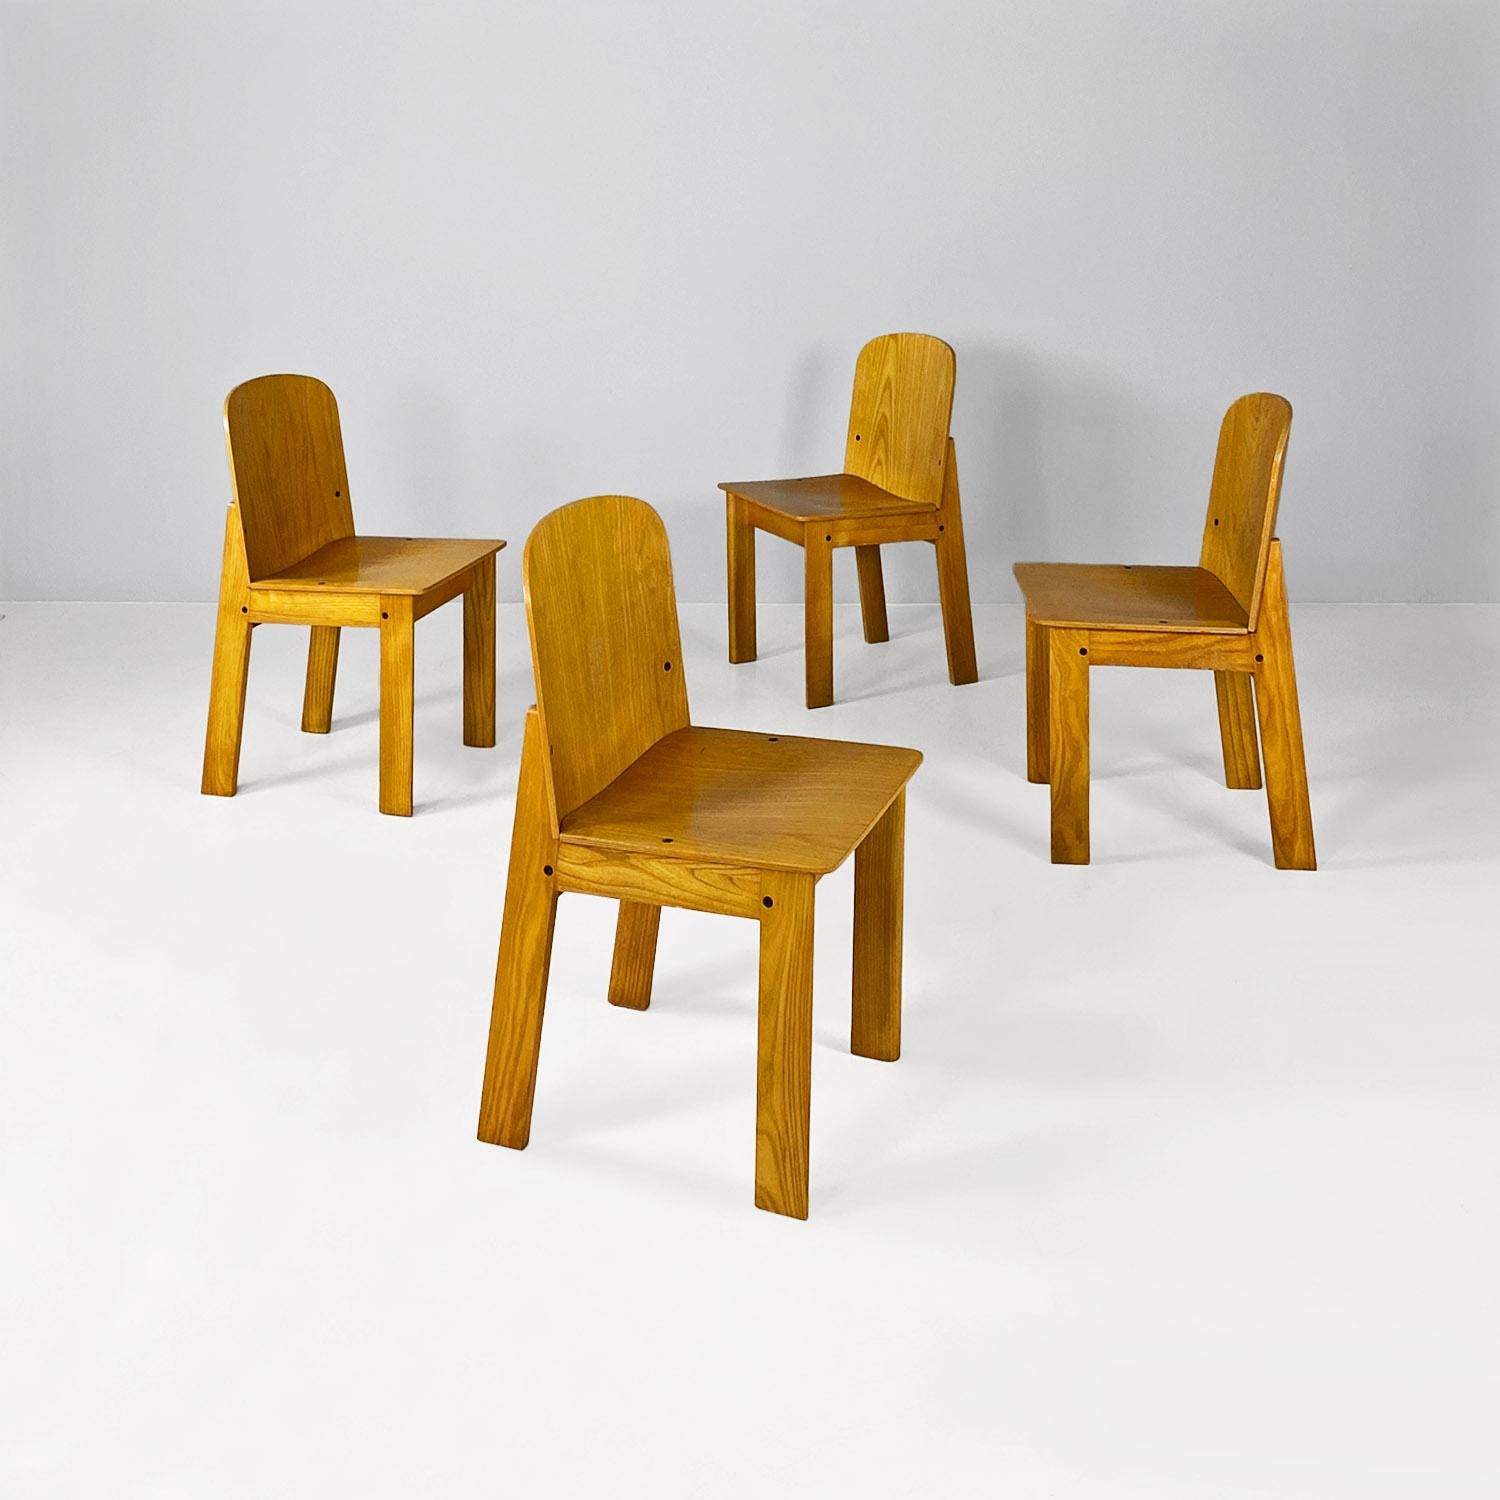 Modernes italienisches Set aus vier Massivholzstühlen, 1980er-Jahre
Satz von vier Stühlen mit Struktur vollständig in Massivholz.
1980 ungefähr.
Gute Bedingungen
Maße in 43x46x76h cm und Sitz 42h cm
Nicht separat erhältlich.
Schöner Satz von vier